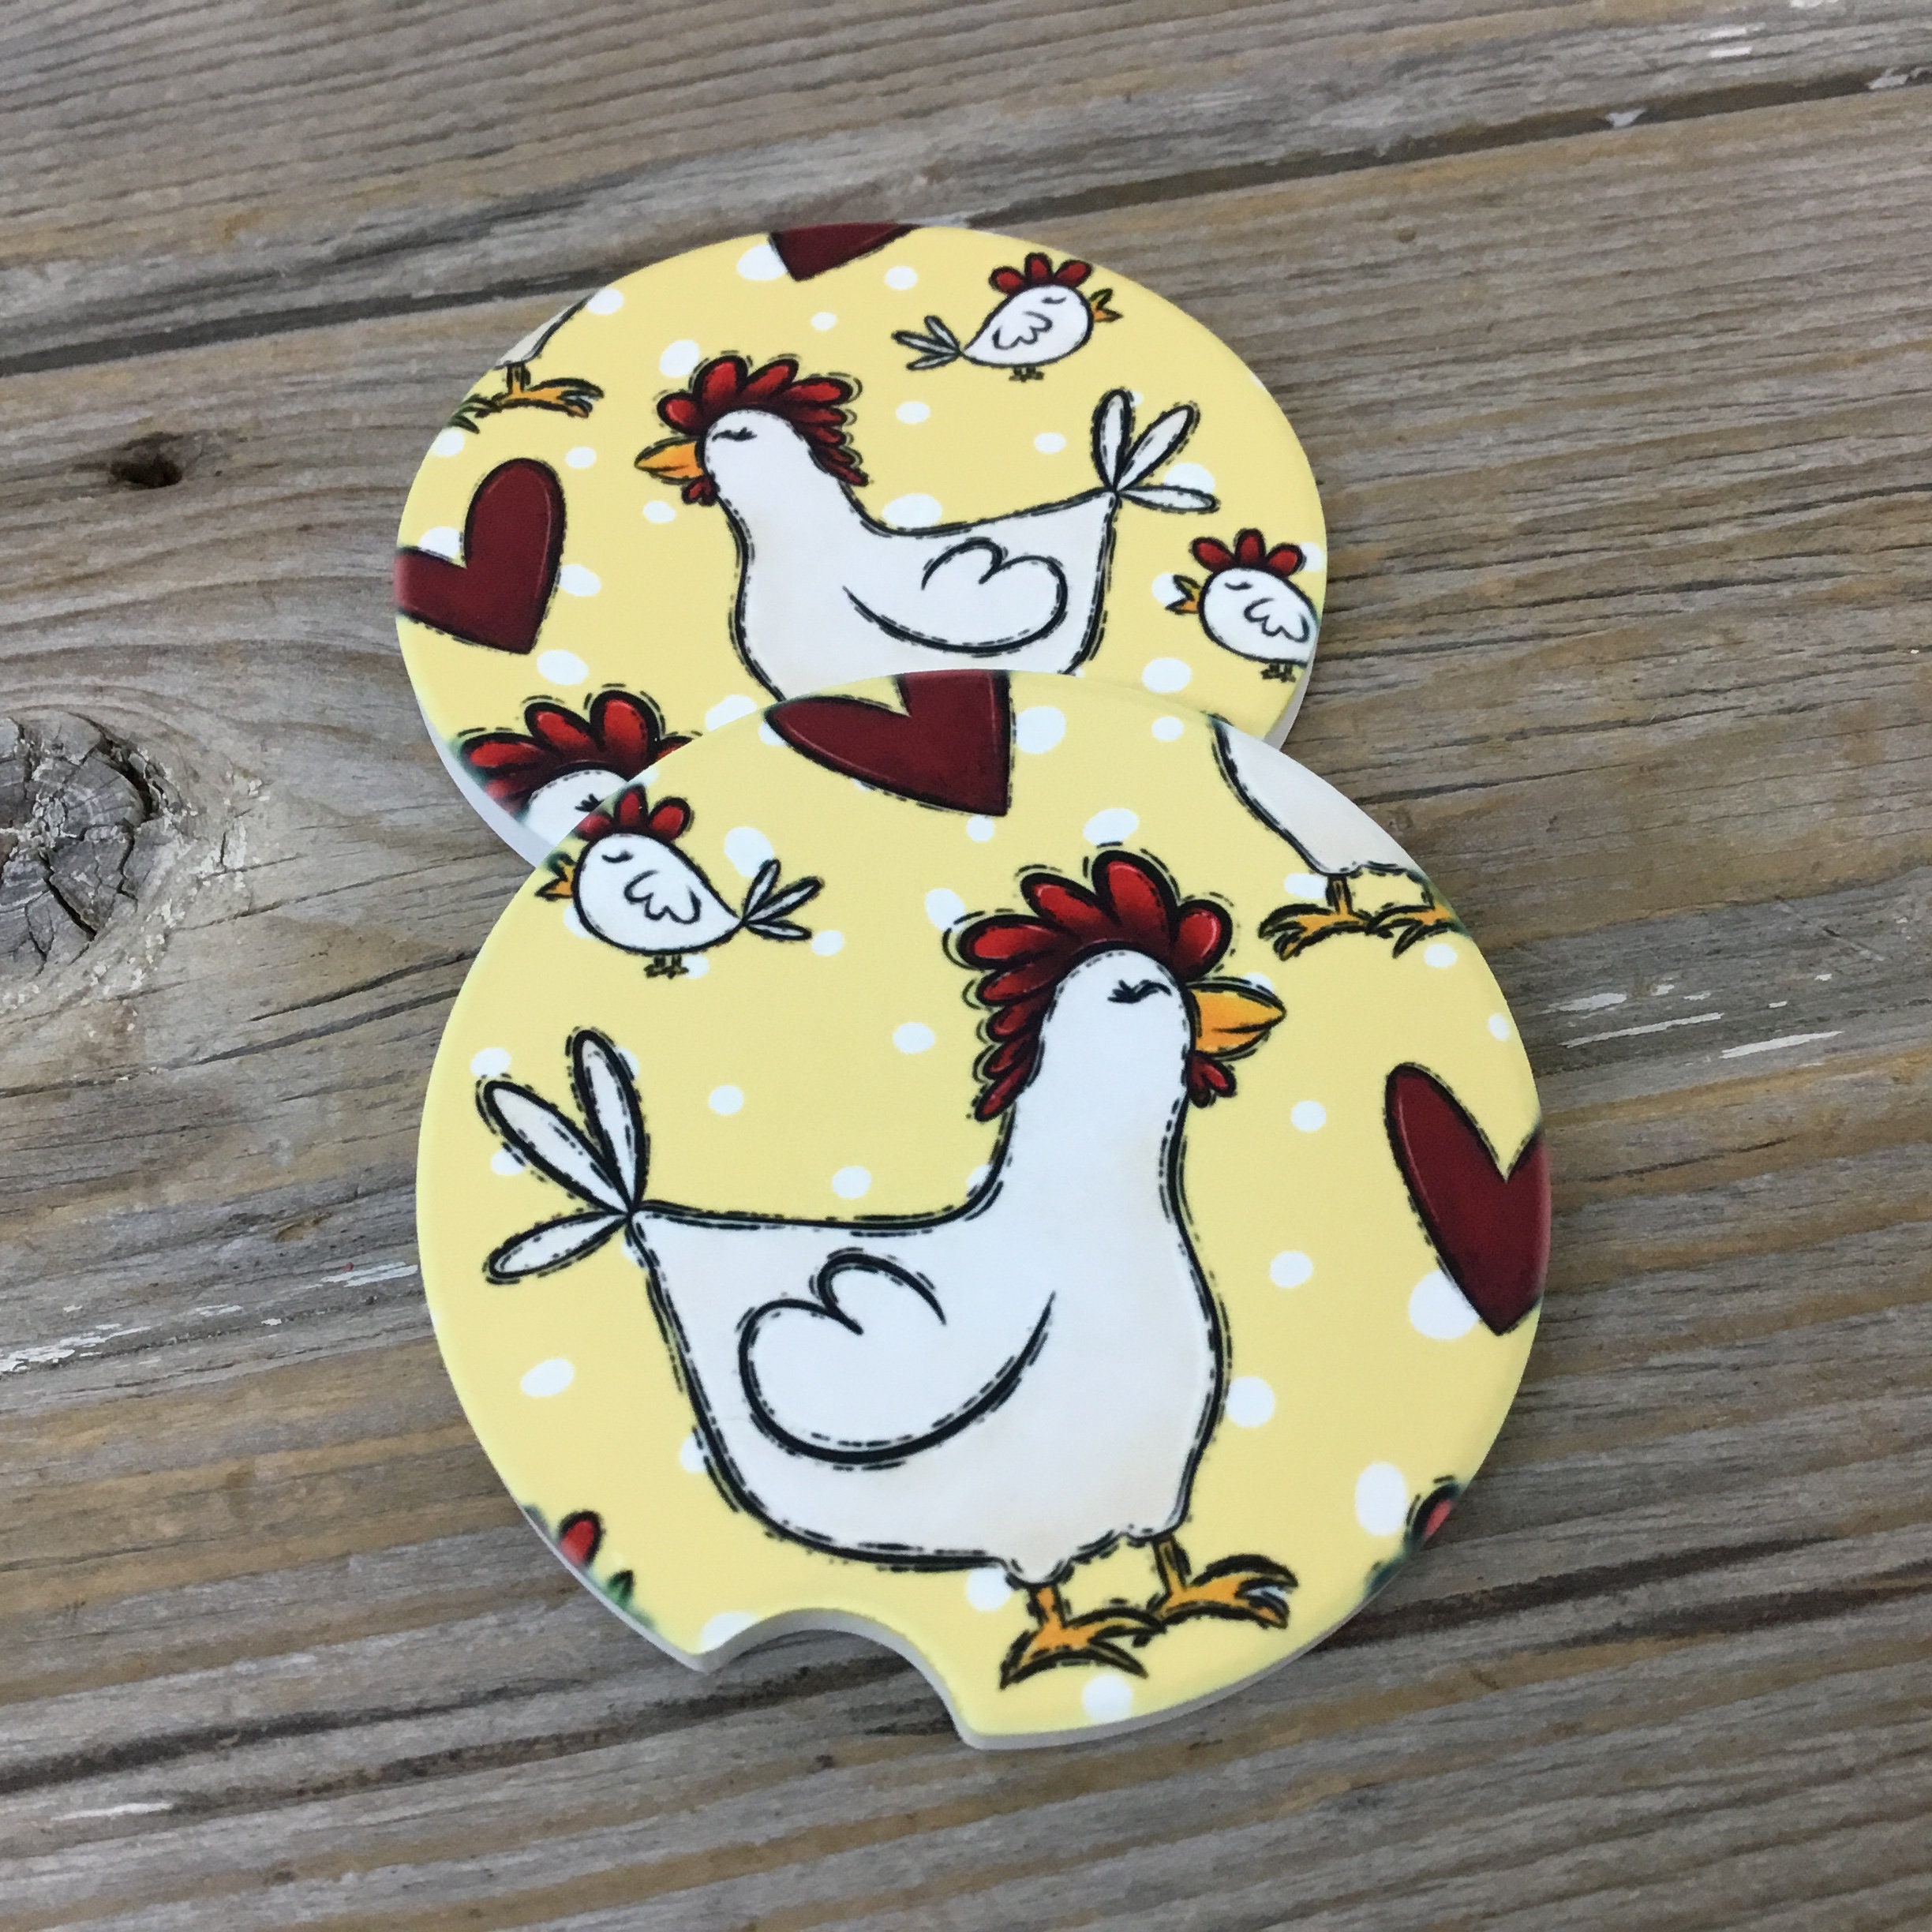 Car Coaster 2-Pack - Love Chickens Farm Series